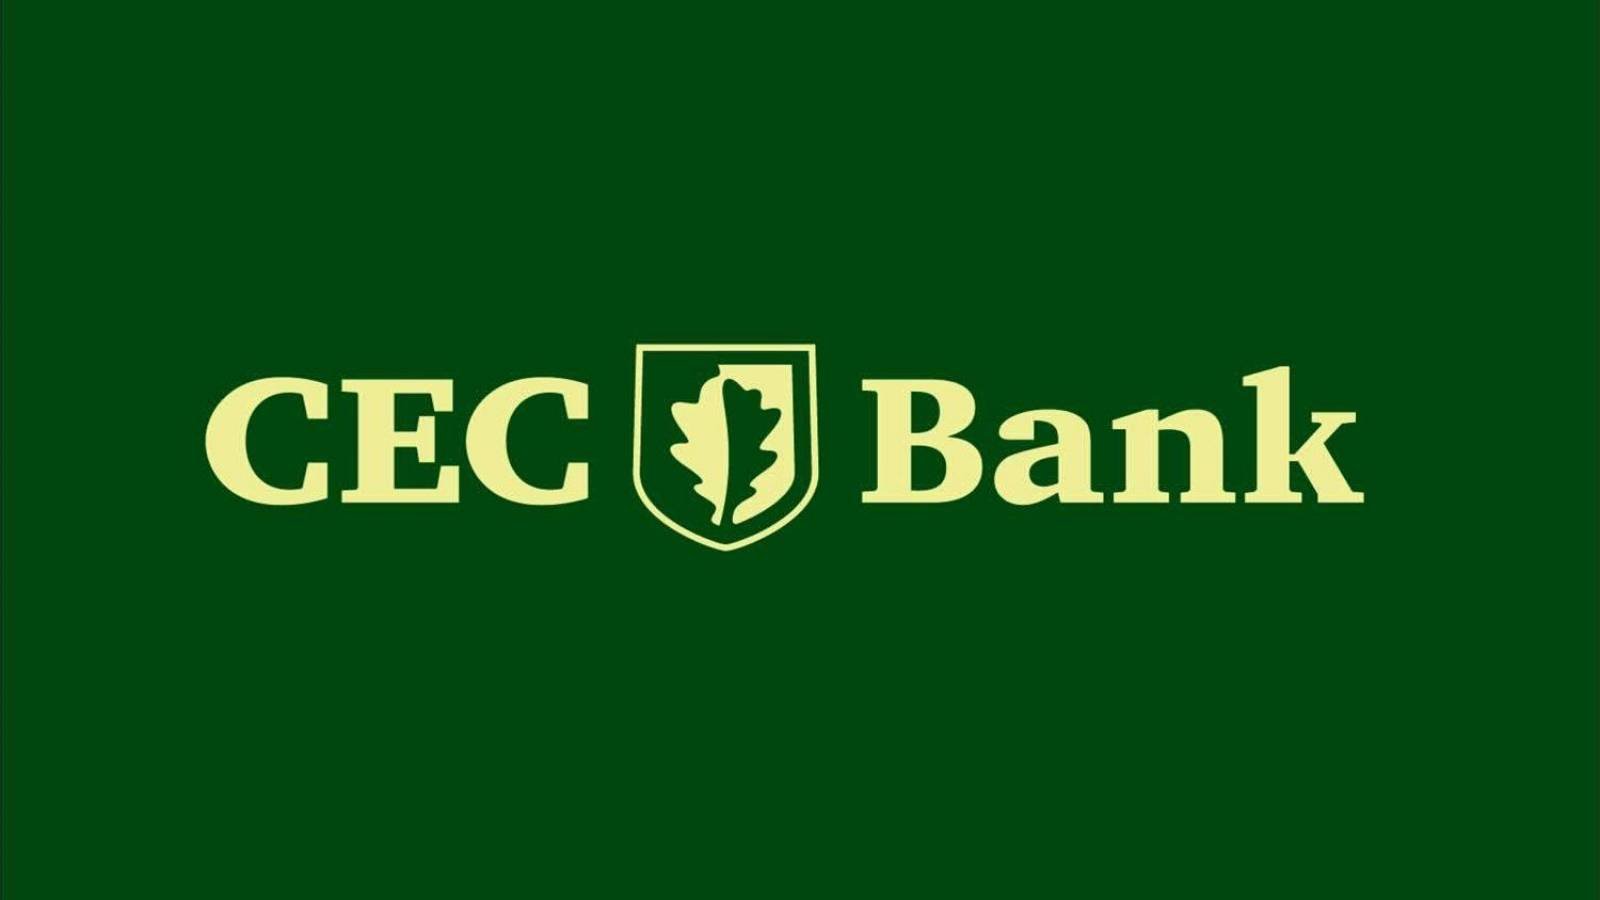 Szybkość banku CEC